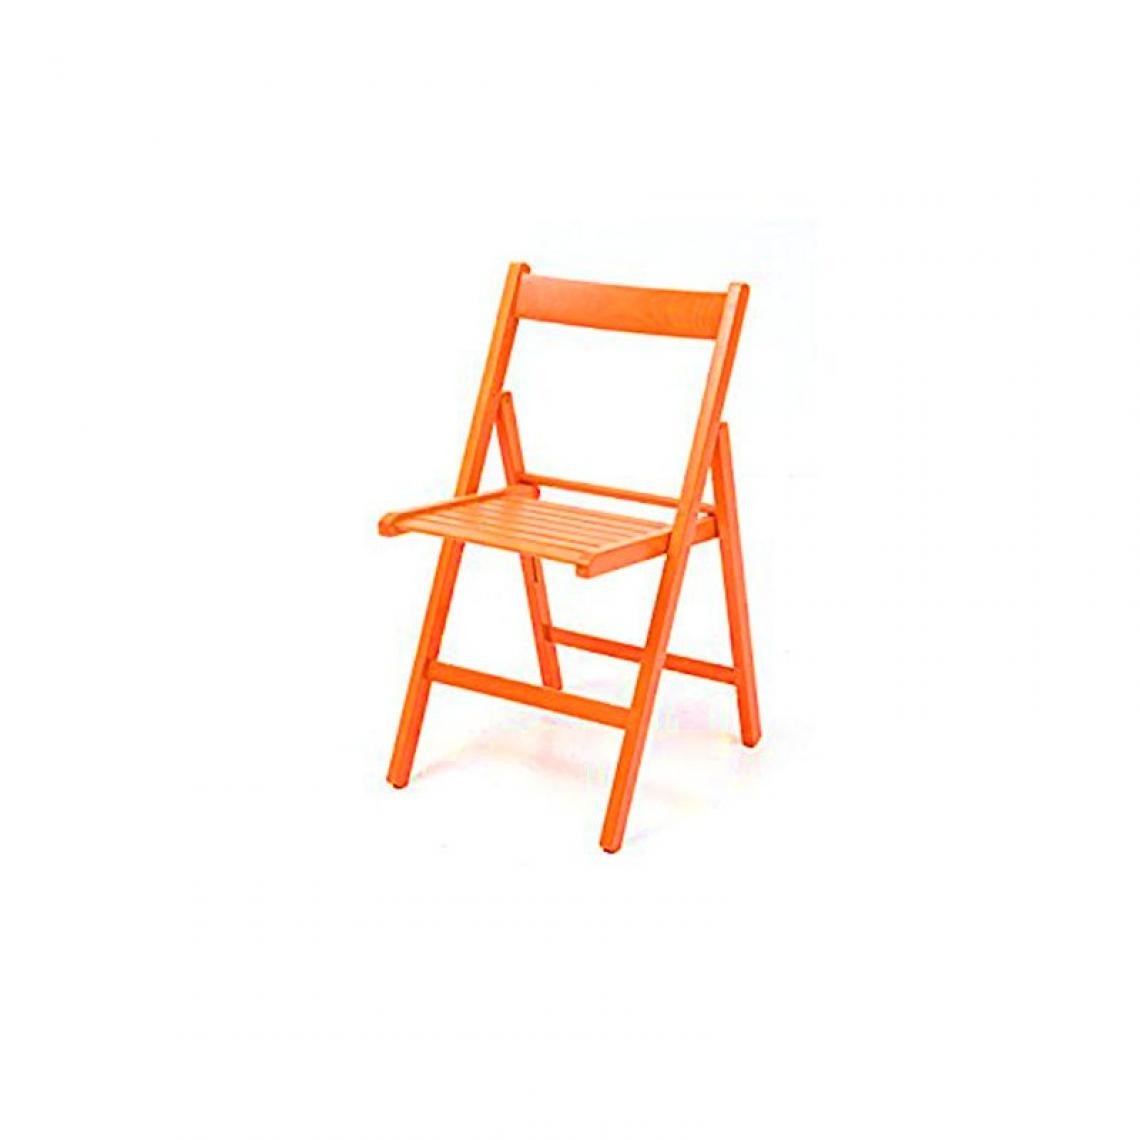 Webmarketpoint - Chaise pliante en hêtre orange de haute qualité 43x48xh.79 cm - Chaises